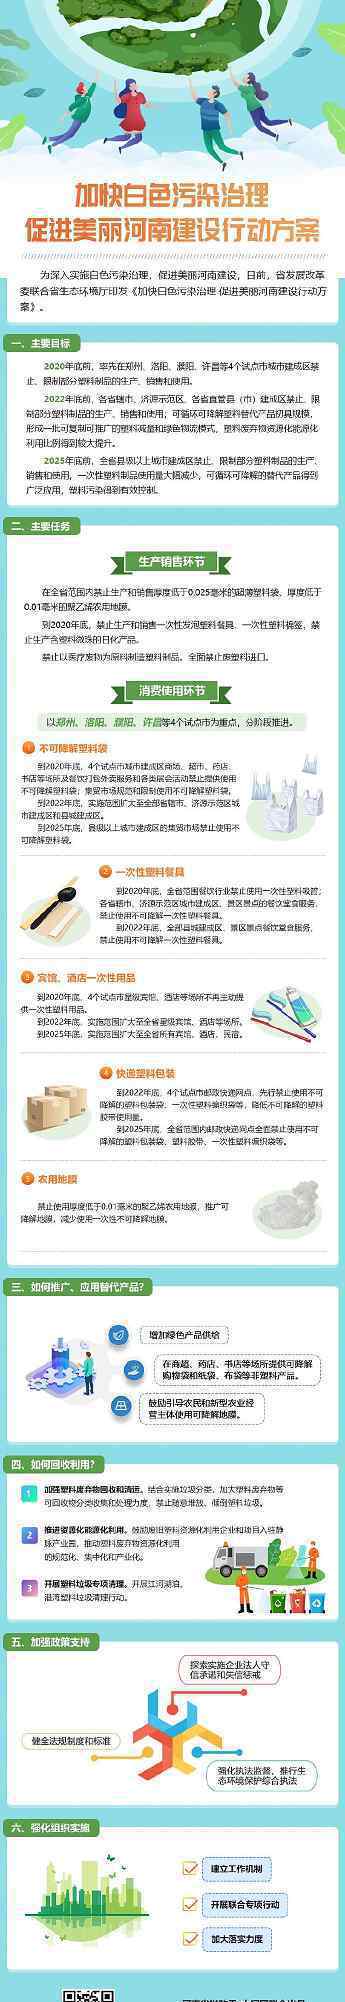 河南禁止生产销售一次性塑料制品 事件详细经过！